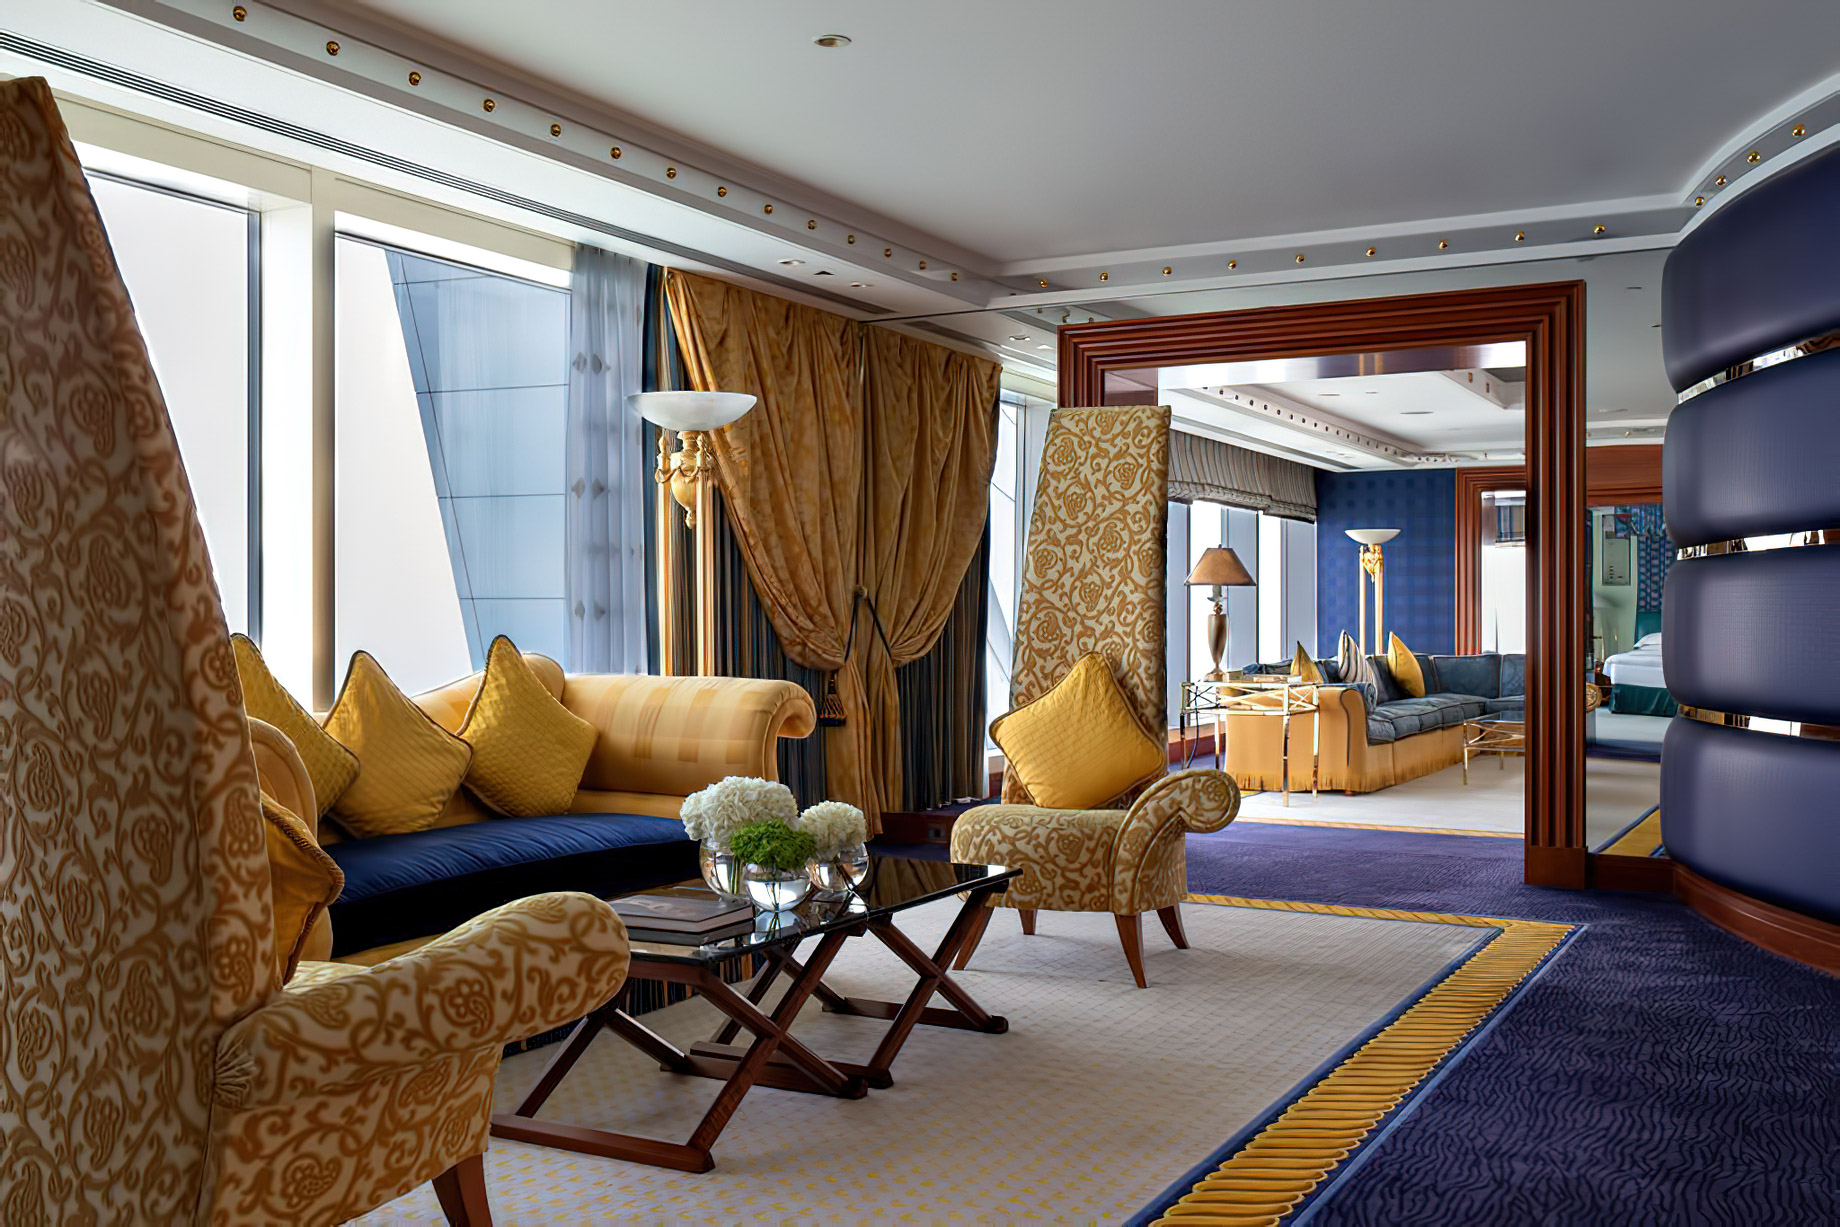 Burj Al Arab Jumeirah Hotel – Dubai, UAE – Diplomatic Suite